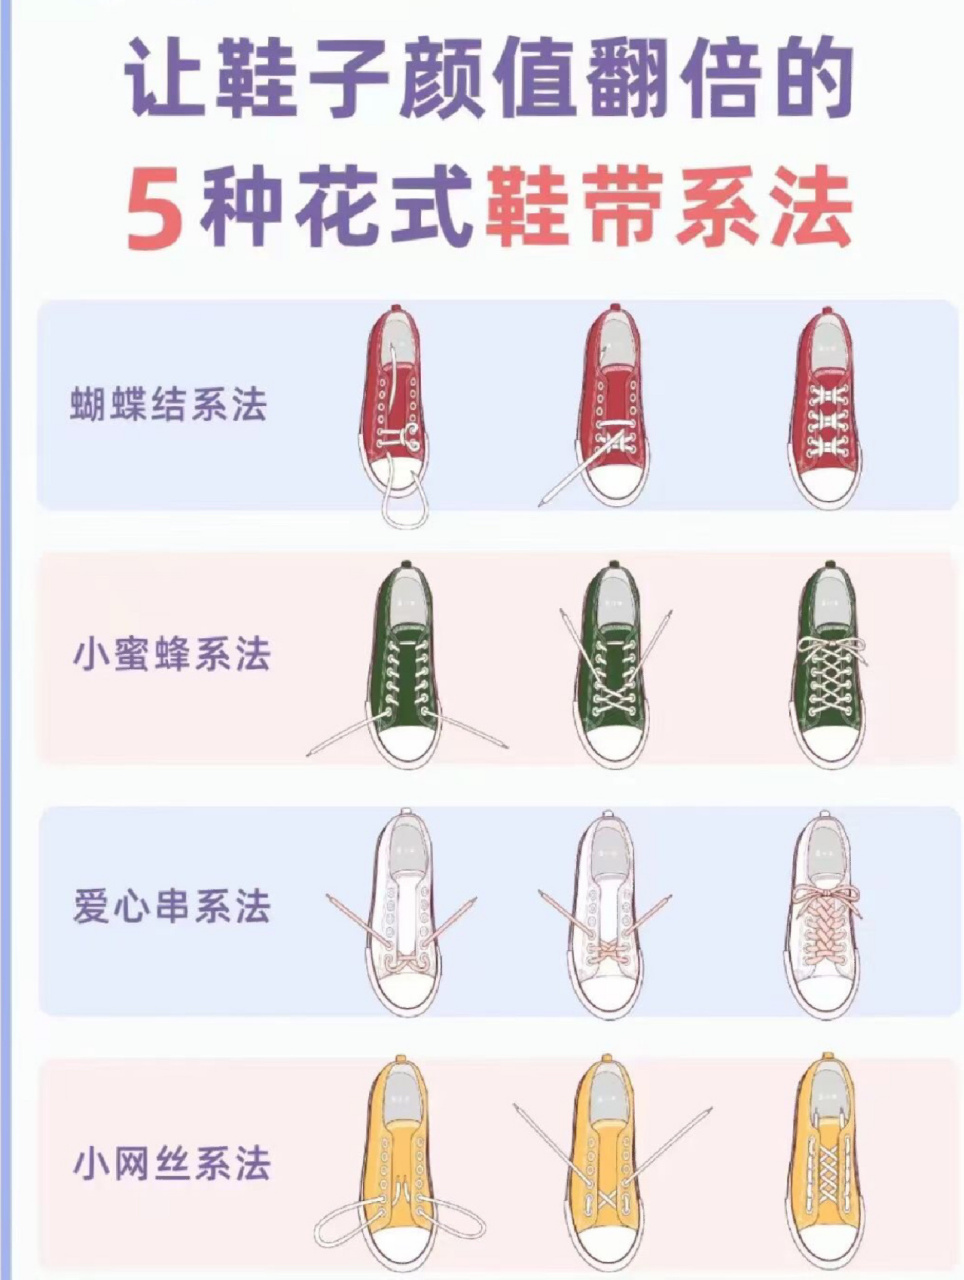 5种花式鞋带系法,让鞋子颜值翻翻倍!